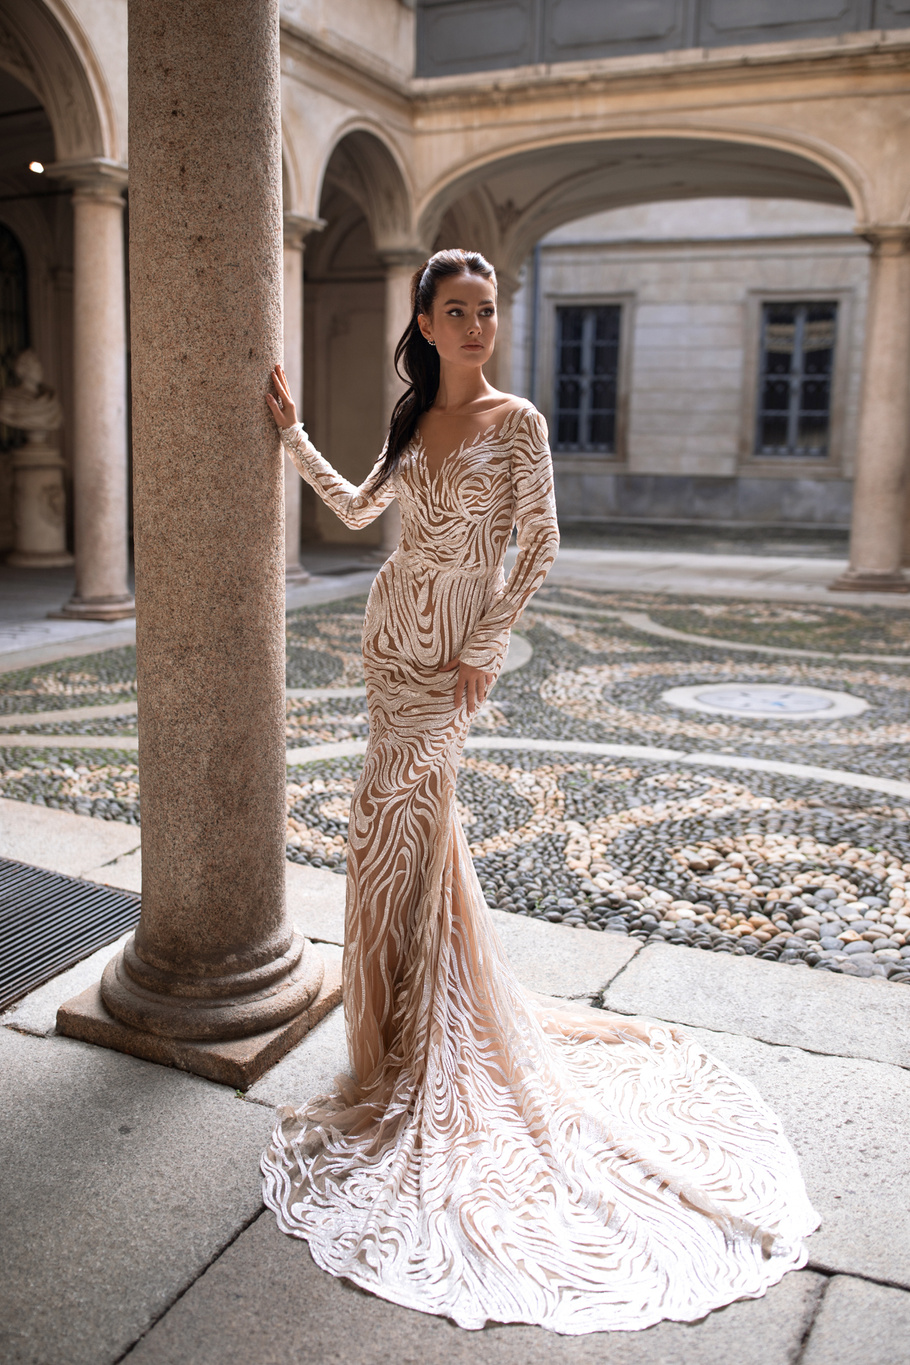 Свадебное платье Марианна от Ида Торез — купить в Самарае платье Марианна из коллекции Милано 2020